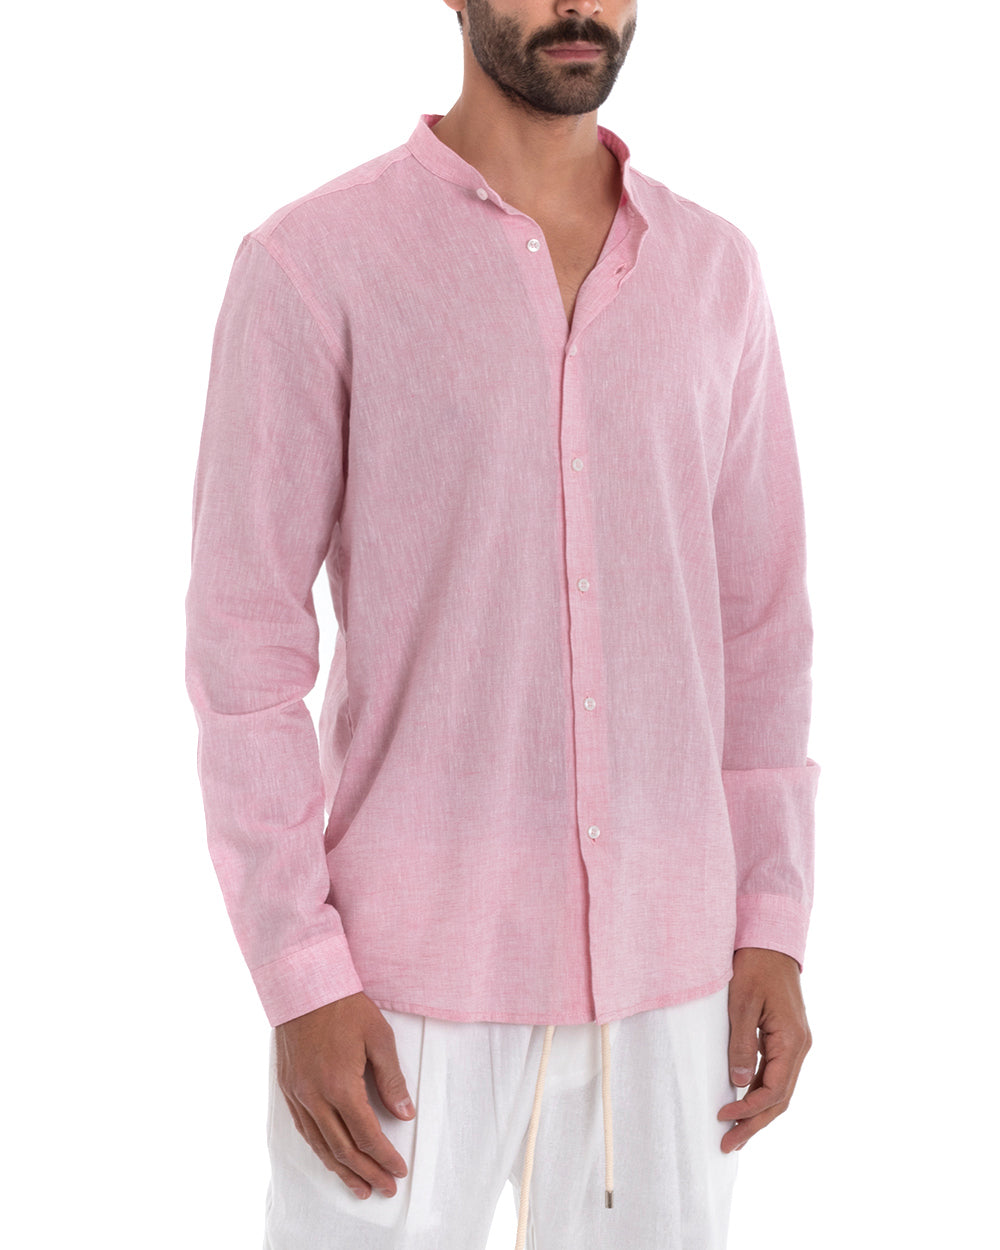 Men's Mandarin Collar Tailored Shirt Long Sleeve Melange Linen Light Pink GIOSAL-C2693A